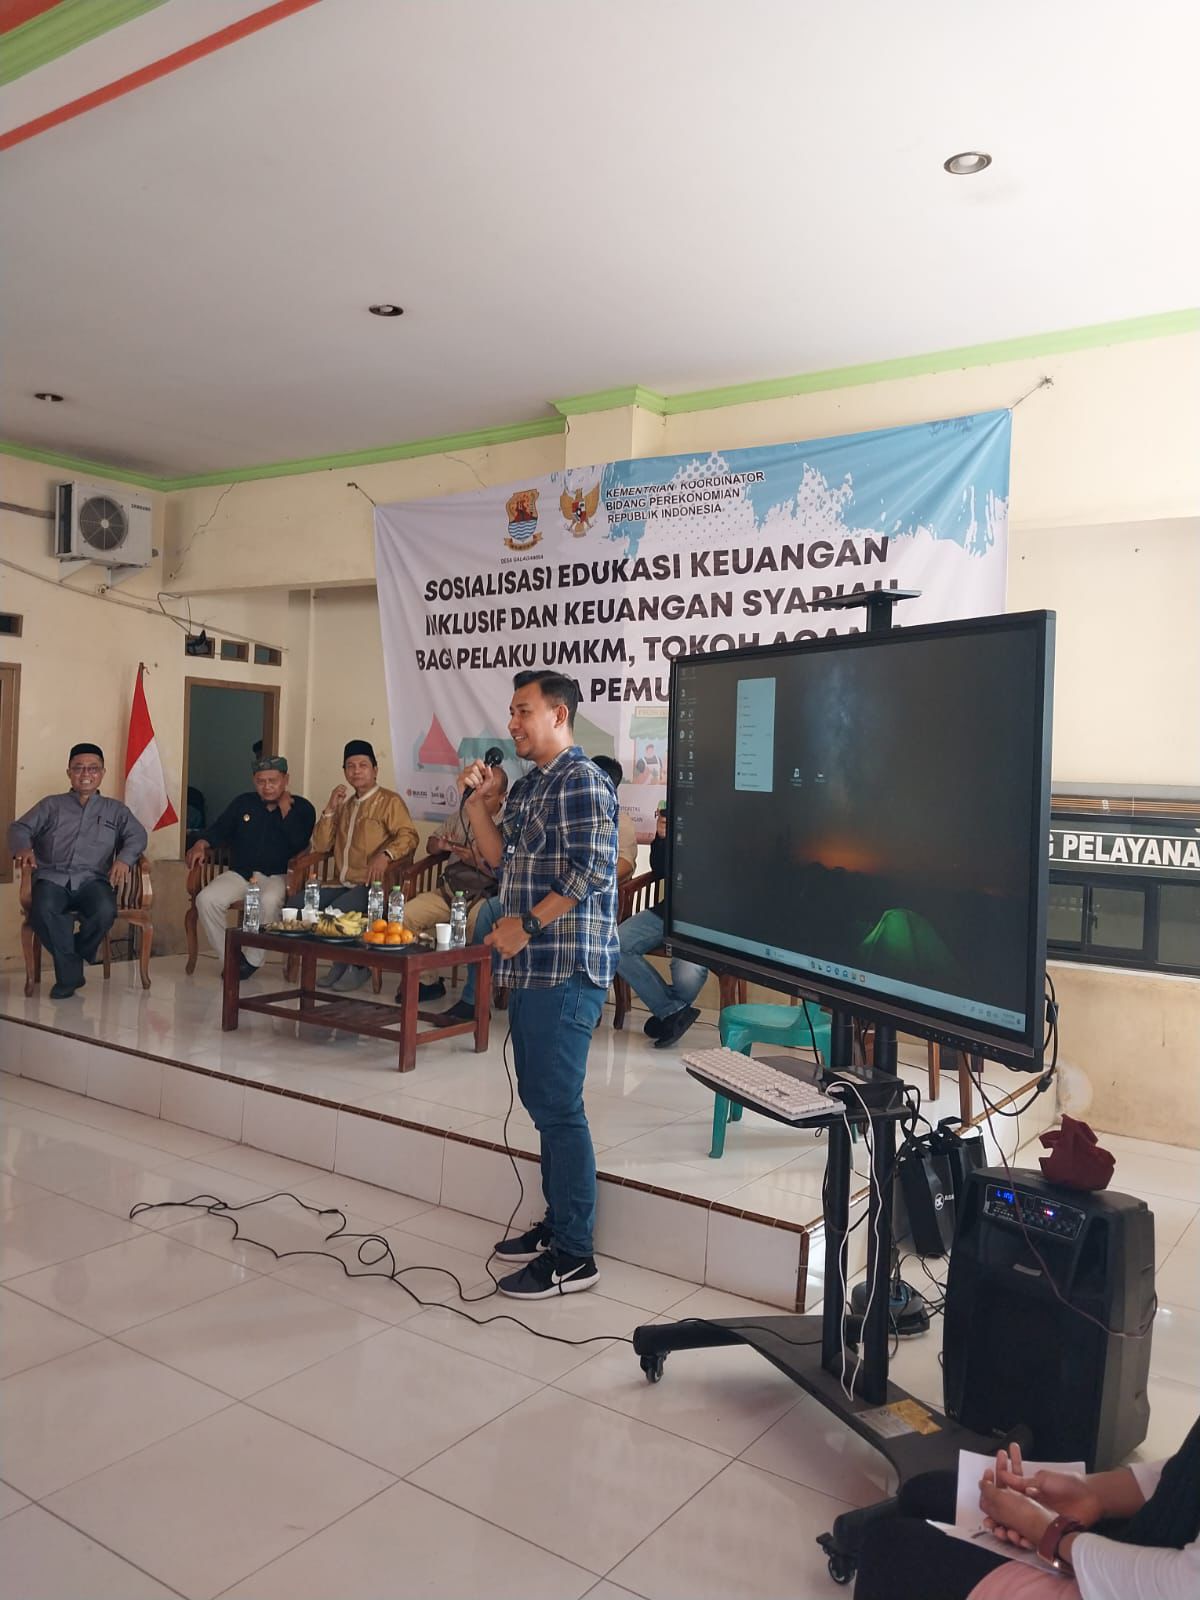 Askrindo Syariah Ikuti Sosialisasi Edukasi Keuangan Inklusif dan Syariah di Cirebon